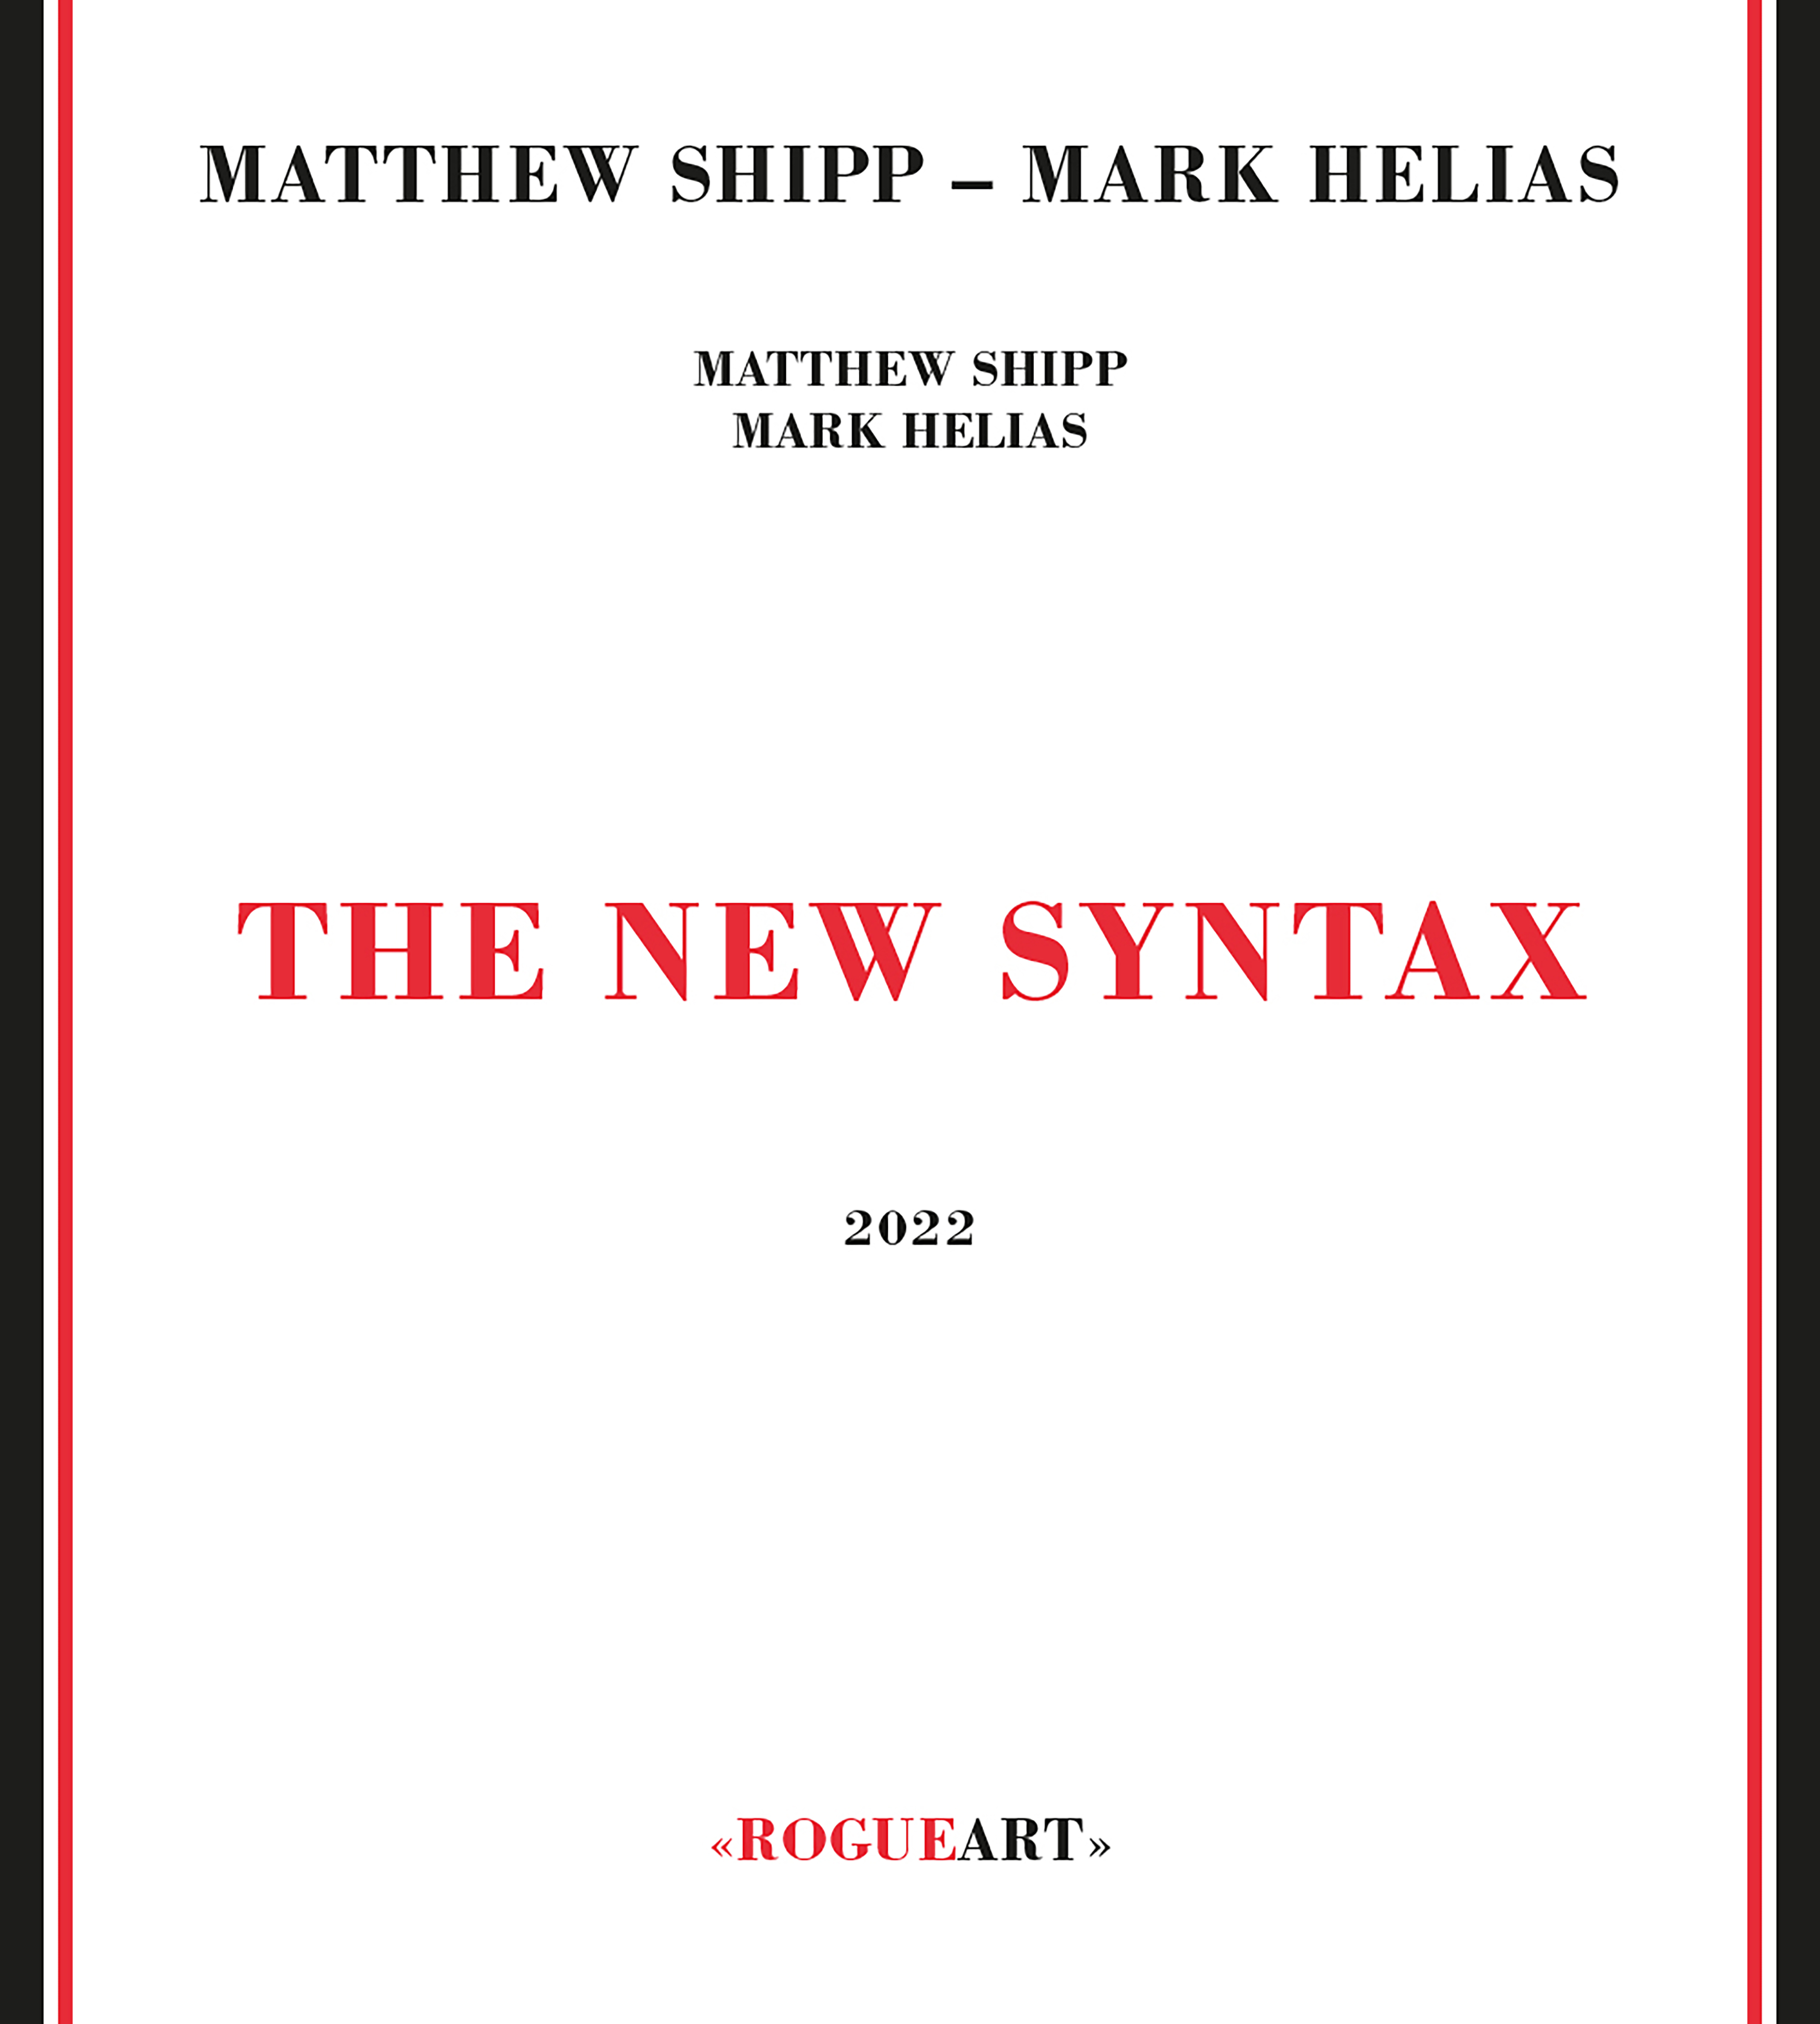 Matthew Shipp & Mark Helias - The New Syntax 2020